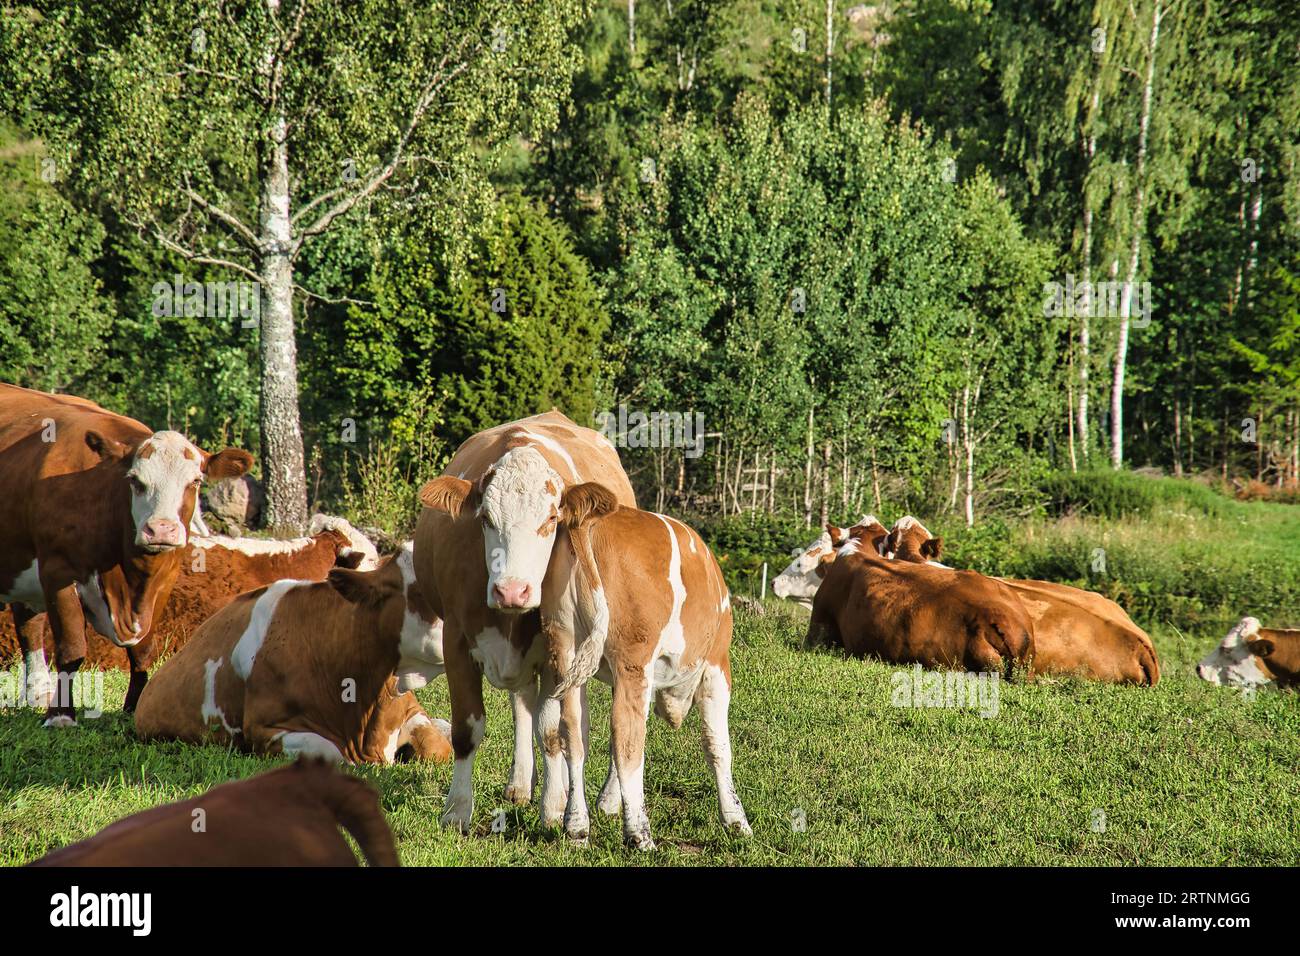 Veau avec vache mère sur un chemin.le jeune animal boit à la mère. Photo d'animal de ferme de Scandinavie Banque D'Images